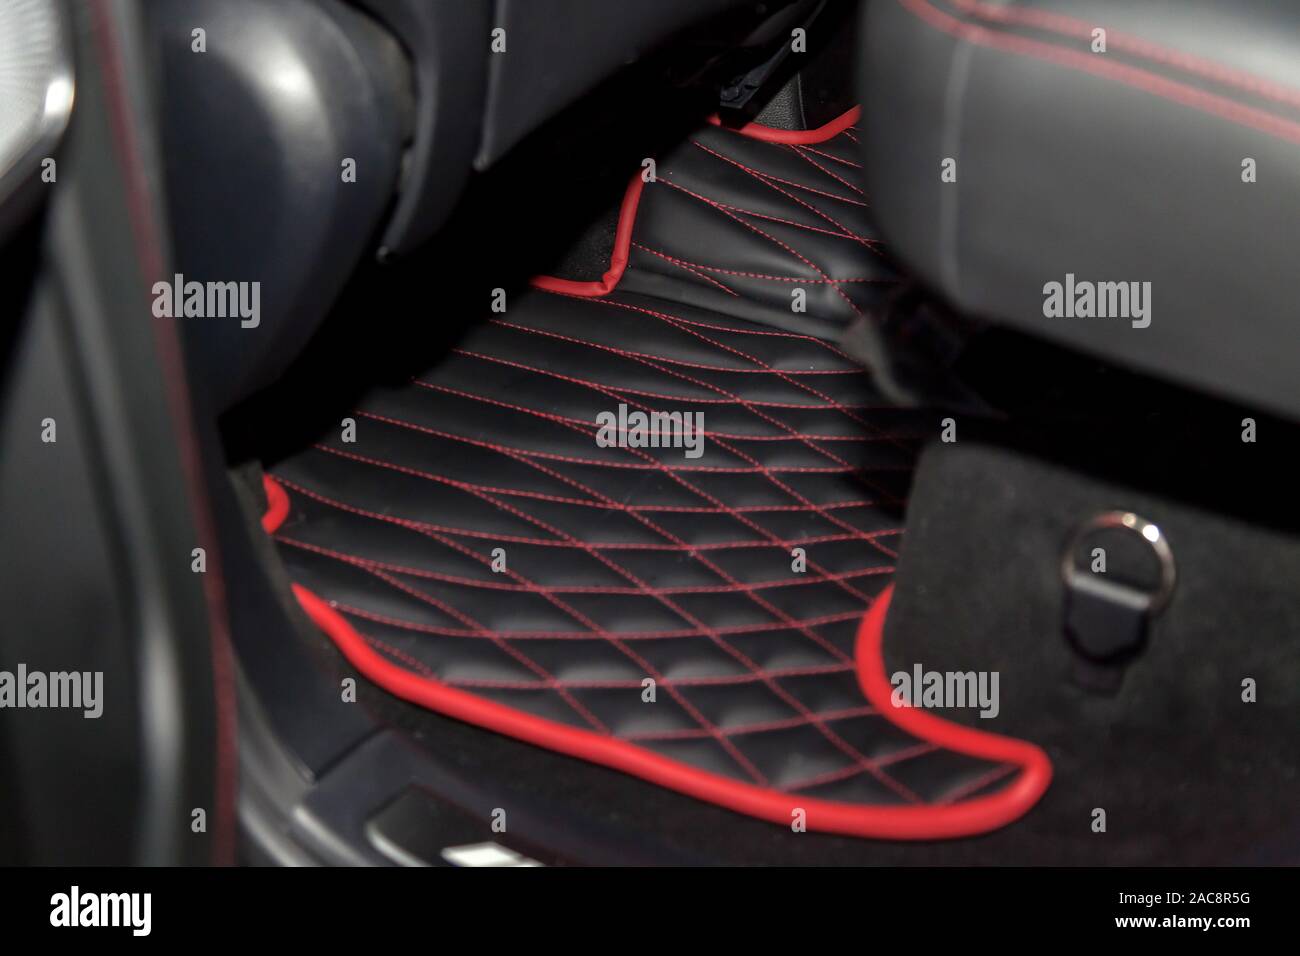 Reinigen schwarz Leder auto Fußmatten mit Diamond rote Naht und ein  Gaspedal und Bremsen in der Werkstatt für die Detaillierung Fahrzeug nach  chemische Reinigung Stockfotografie - Alamy